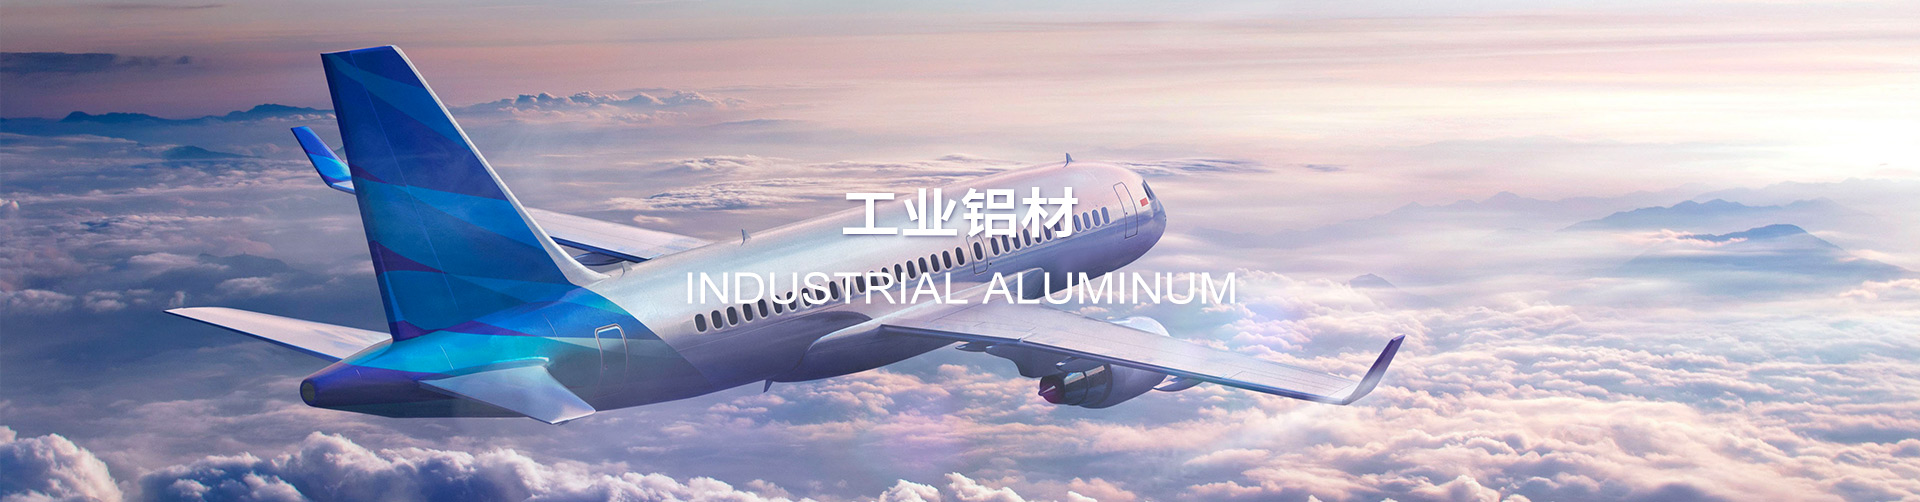 Industrial aluminum banner